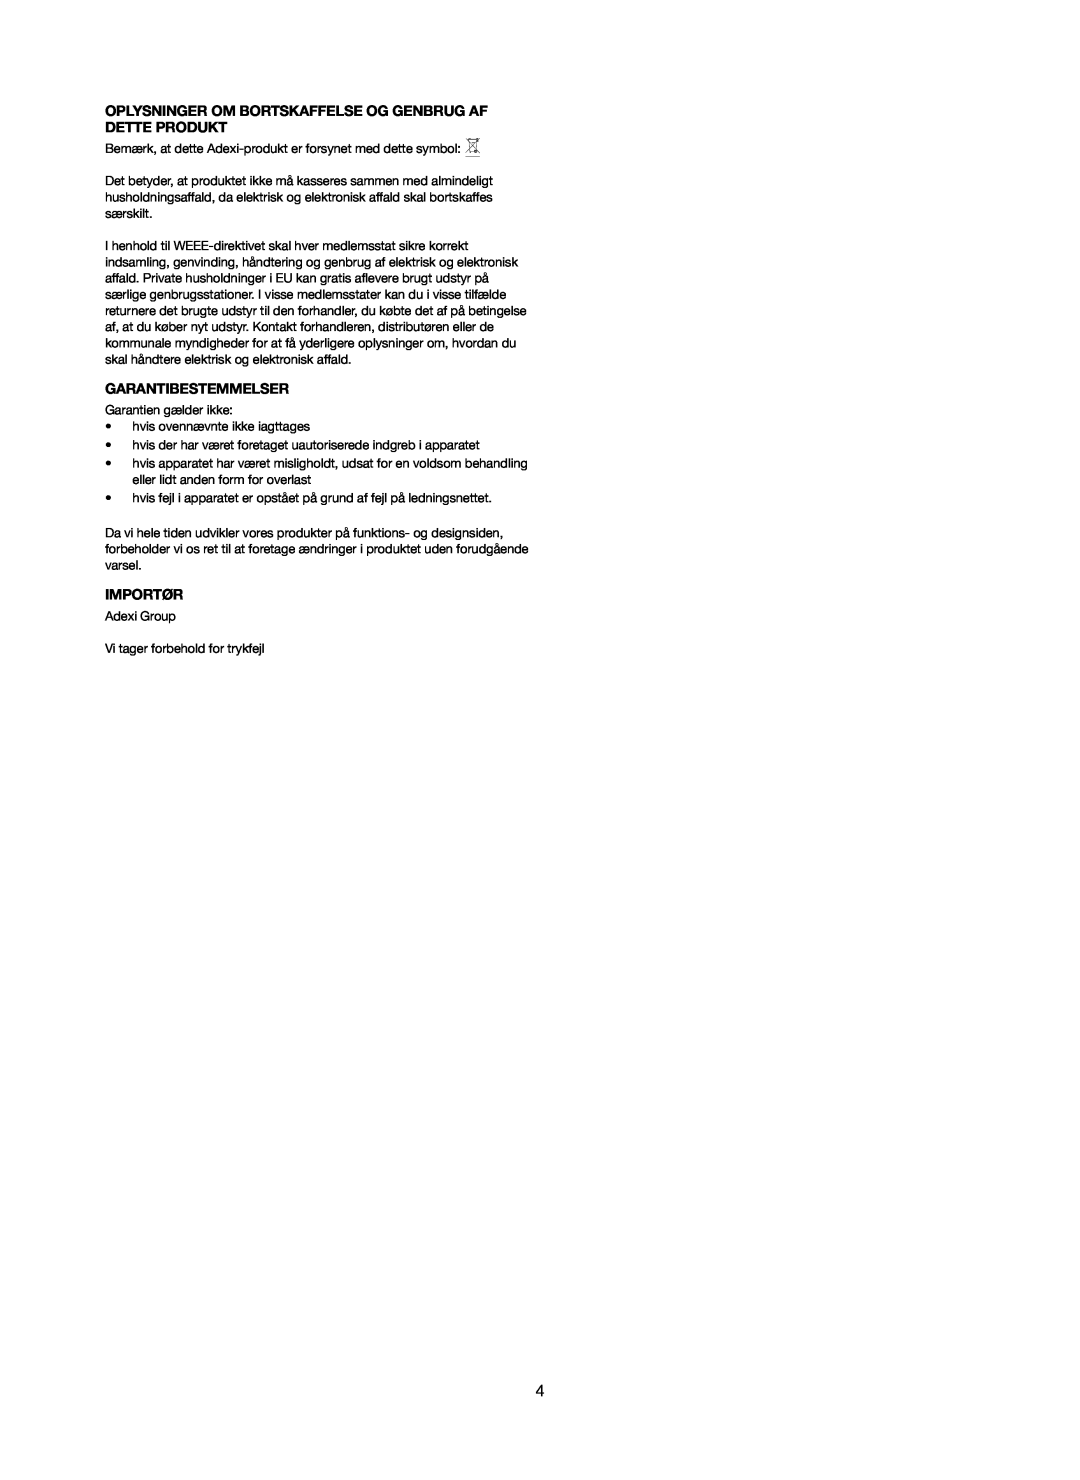 Melissa 251-005 manual Oplysninger Om Bortskaffelse Og Genbrug Af Dette Produkt, Garantibestemmelser, Importør 